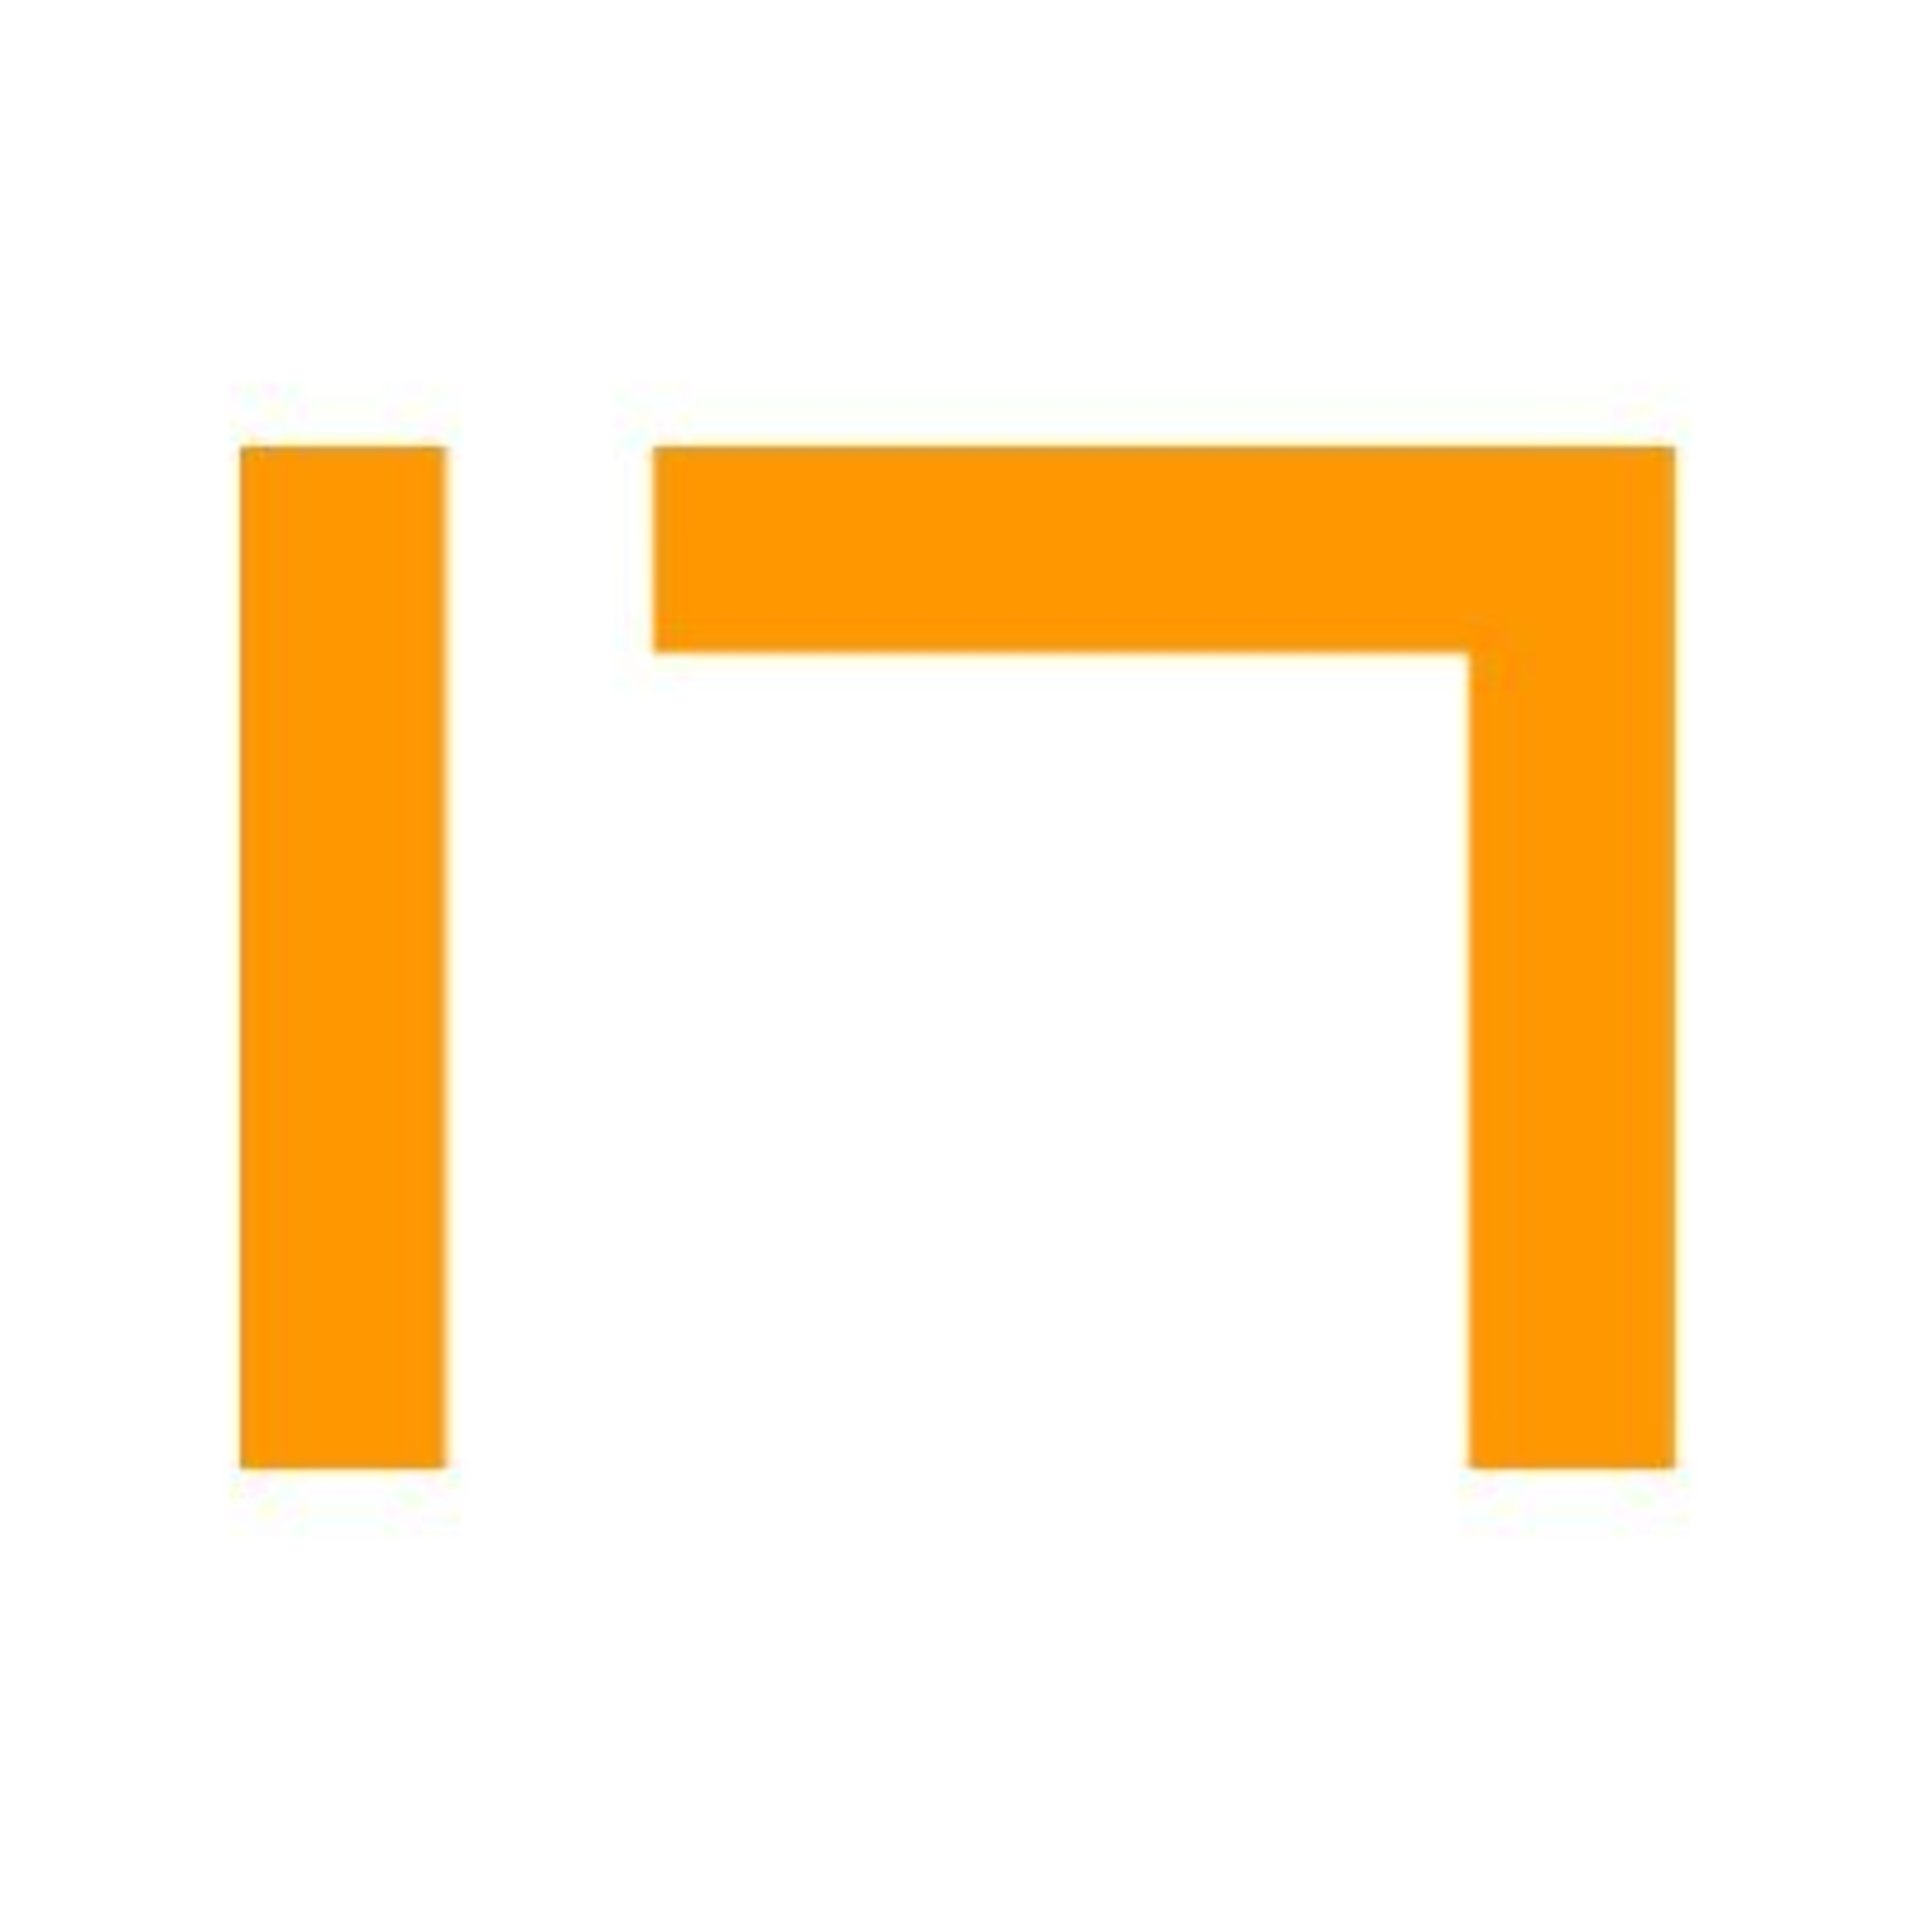 17Studio}'s logo